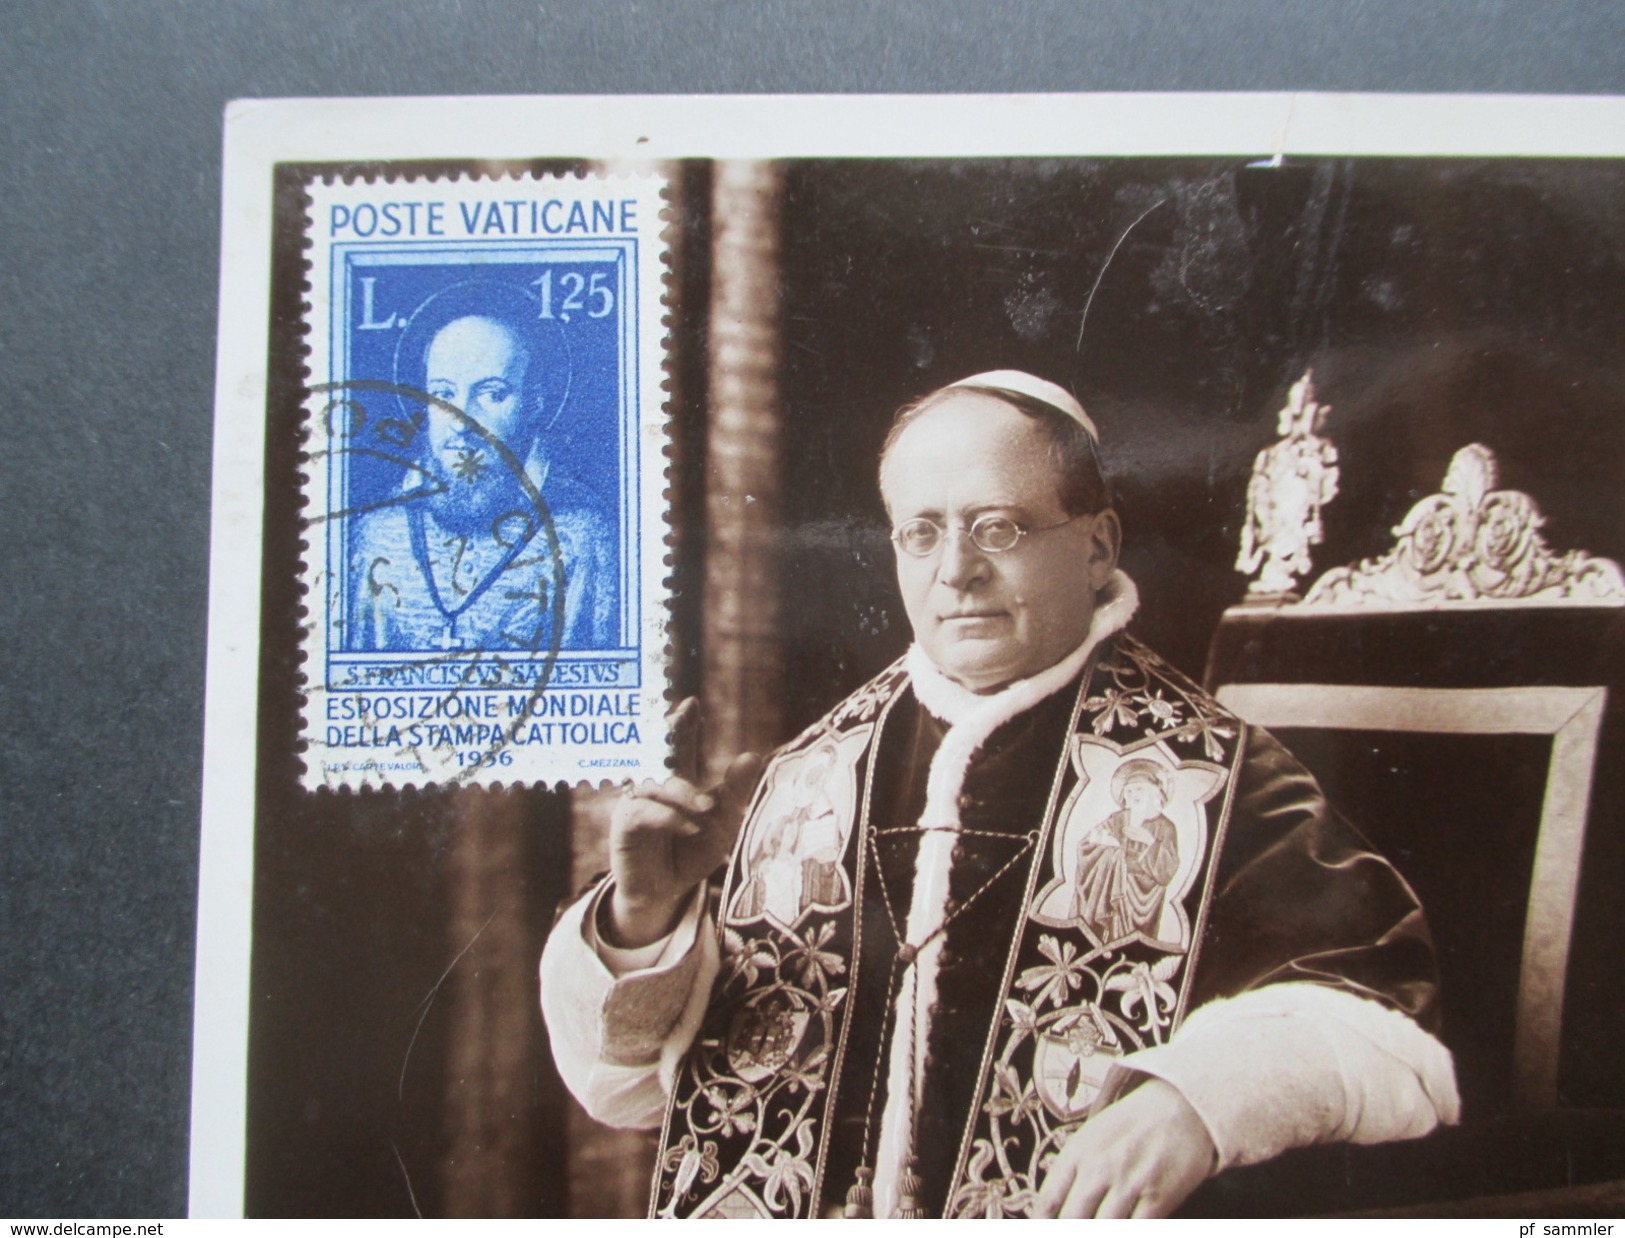 Vatikan 1937 Postkarte Michel Nr. 45 - 50 Und 52 + 54 - 57 Hoher Katalogwert! Bild Und Unterschrift Des Pabst. - Covers & Documents